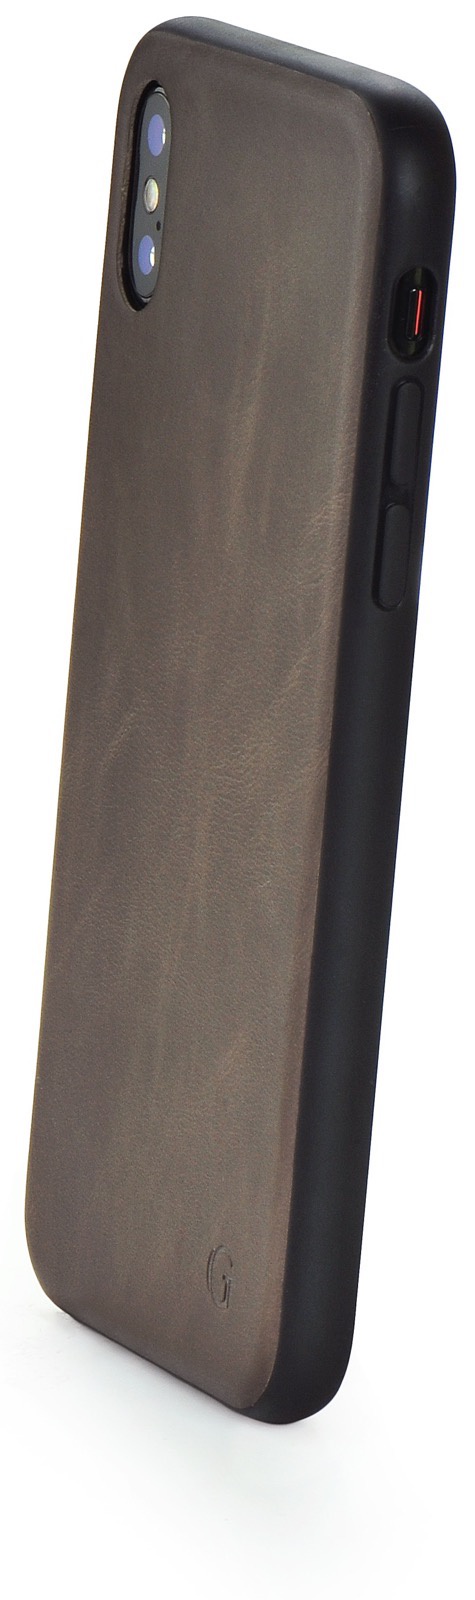 Чехол для сотового телефона Gurdini Premium Leather Case gray GPLCGR-XS01 для Apple iPhone X/XS 5.8", темно-серый